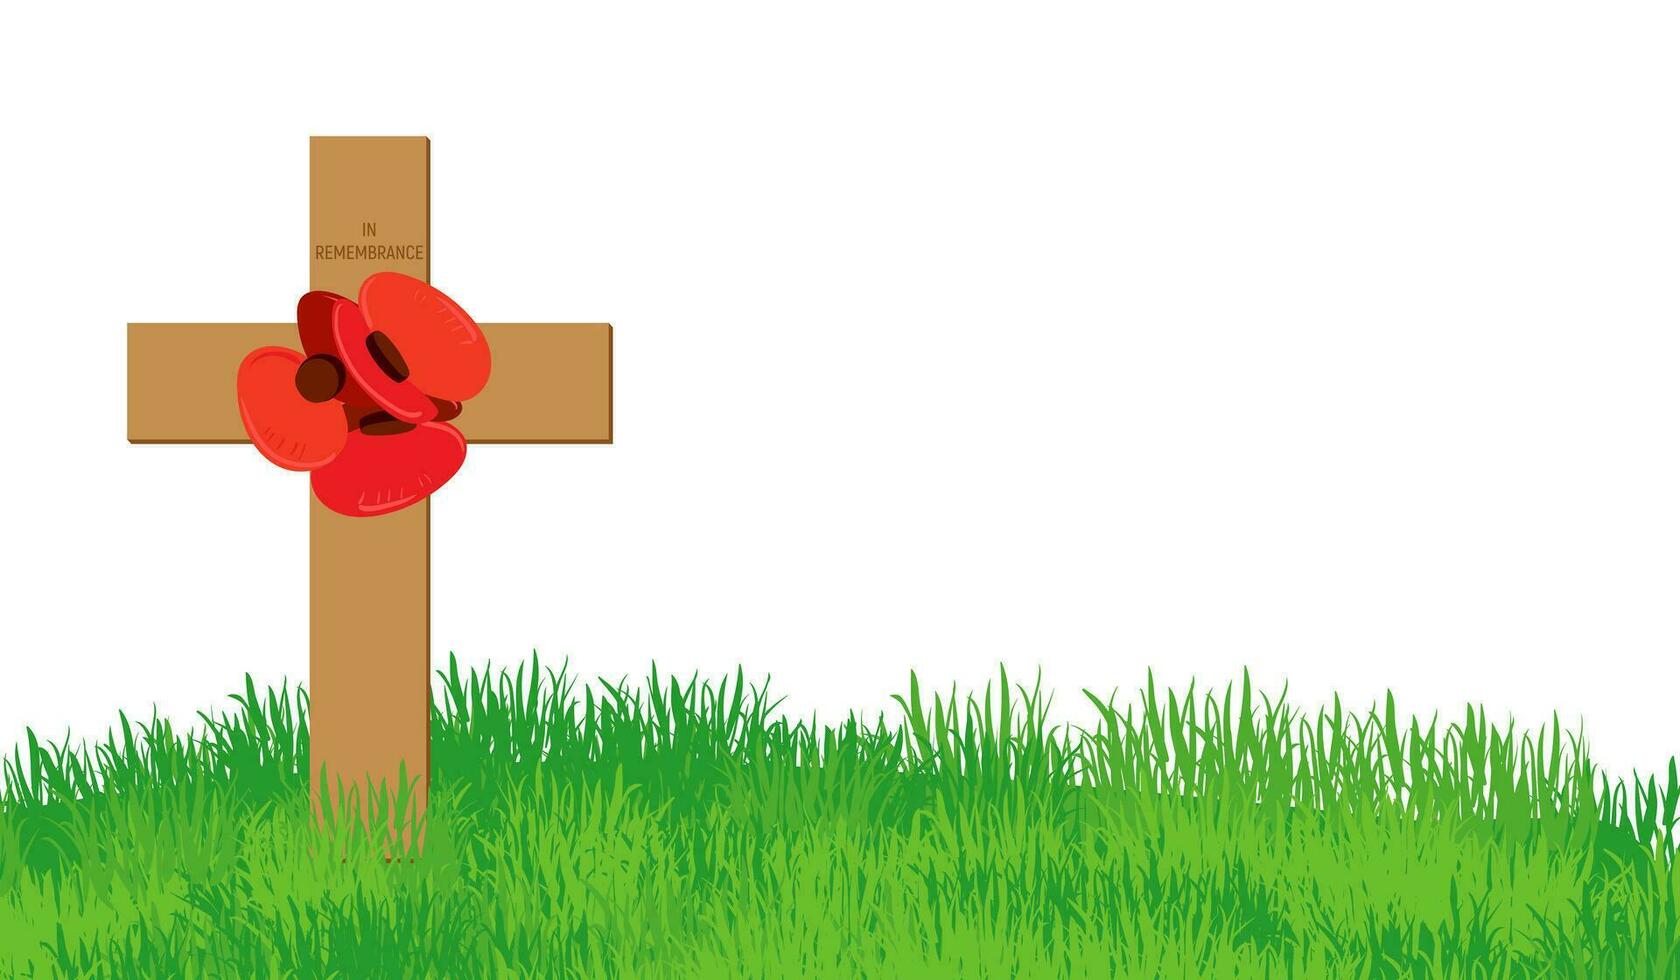 Cruz com vermelho papoilas em uma verde grama. em memorial dia, a sepultura e monumento estão decorado com uma flor guirlanda. comemorativo encontro do ótimo Grã-Bretanha e Canadá. papoula dia. vetor ilustração.